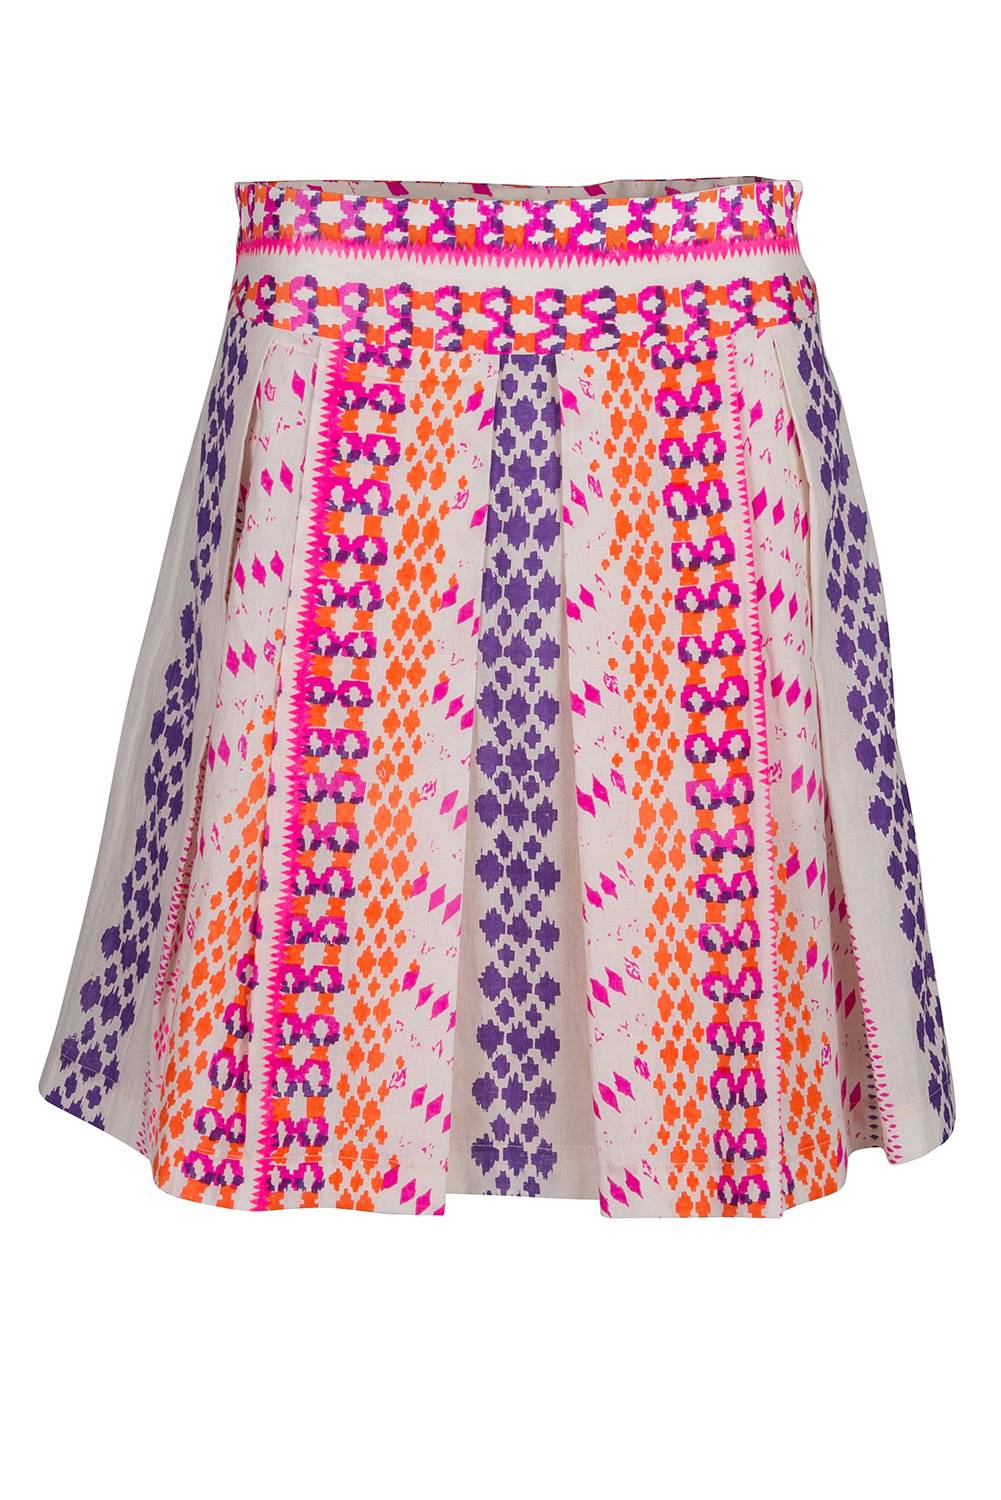 Skirts by Johanna K.